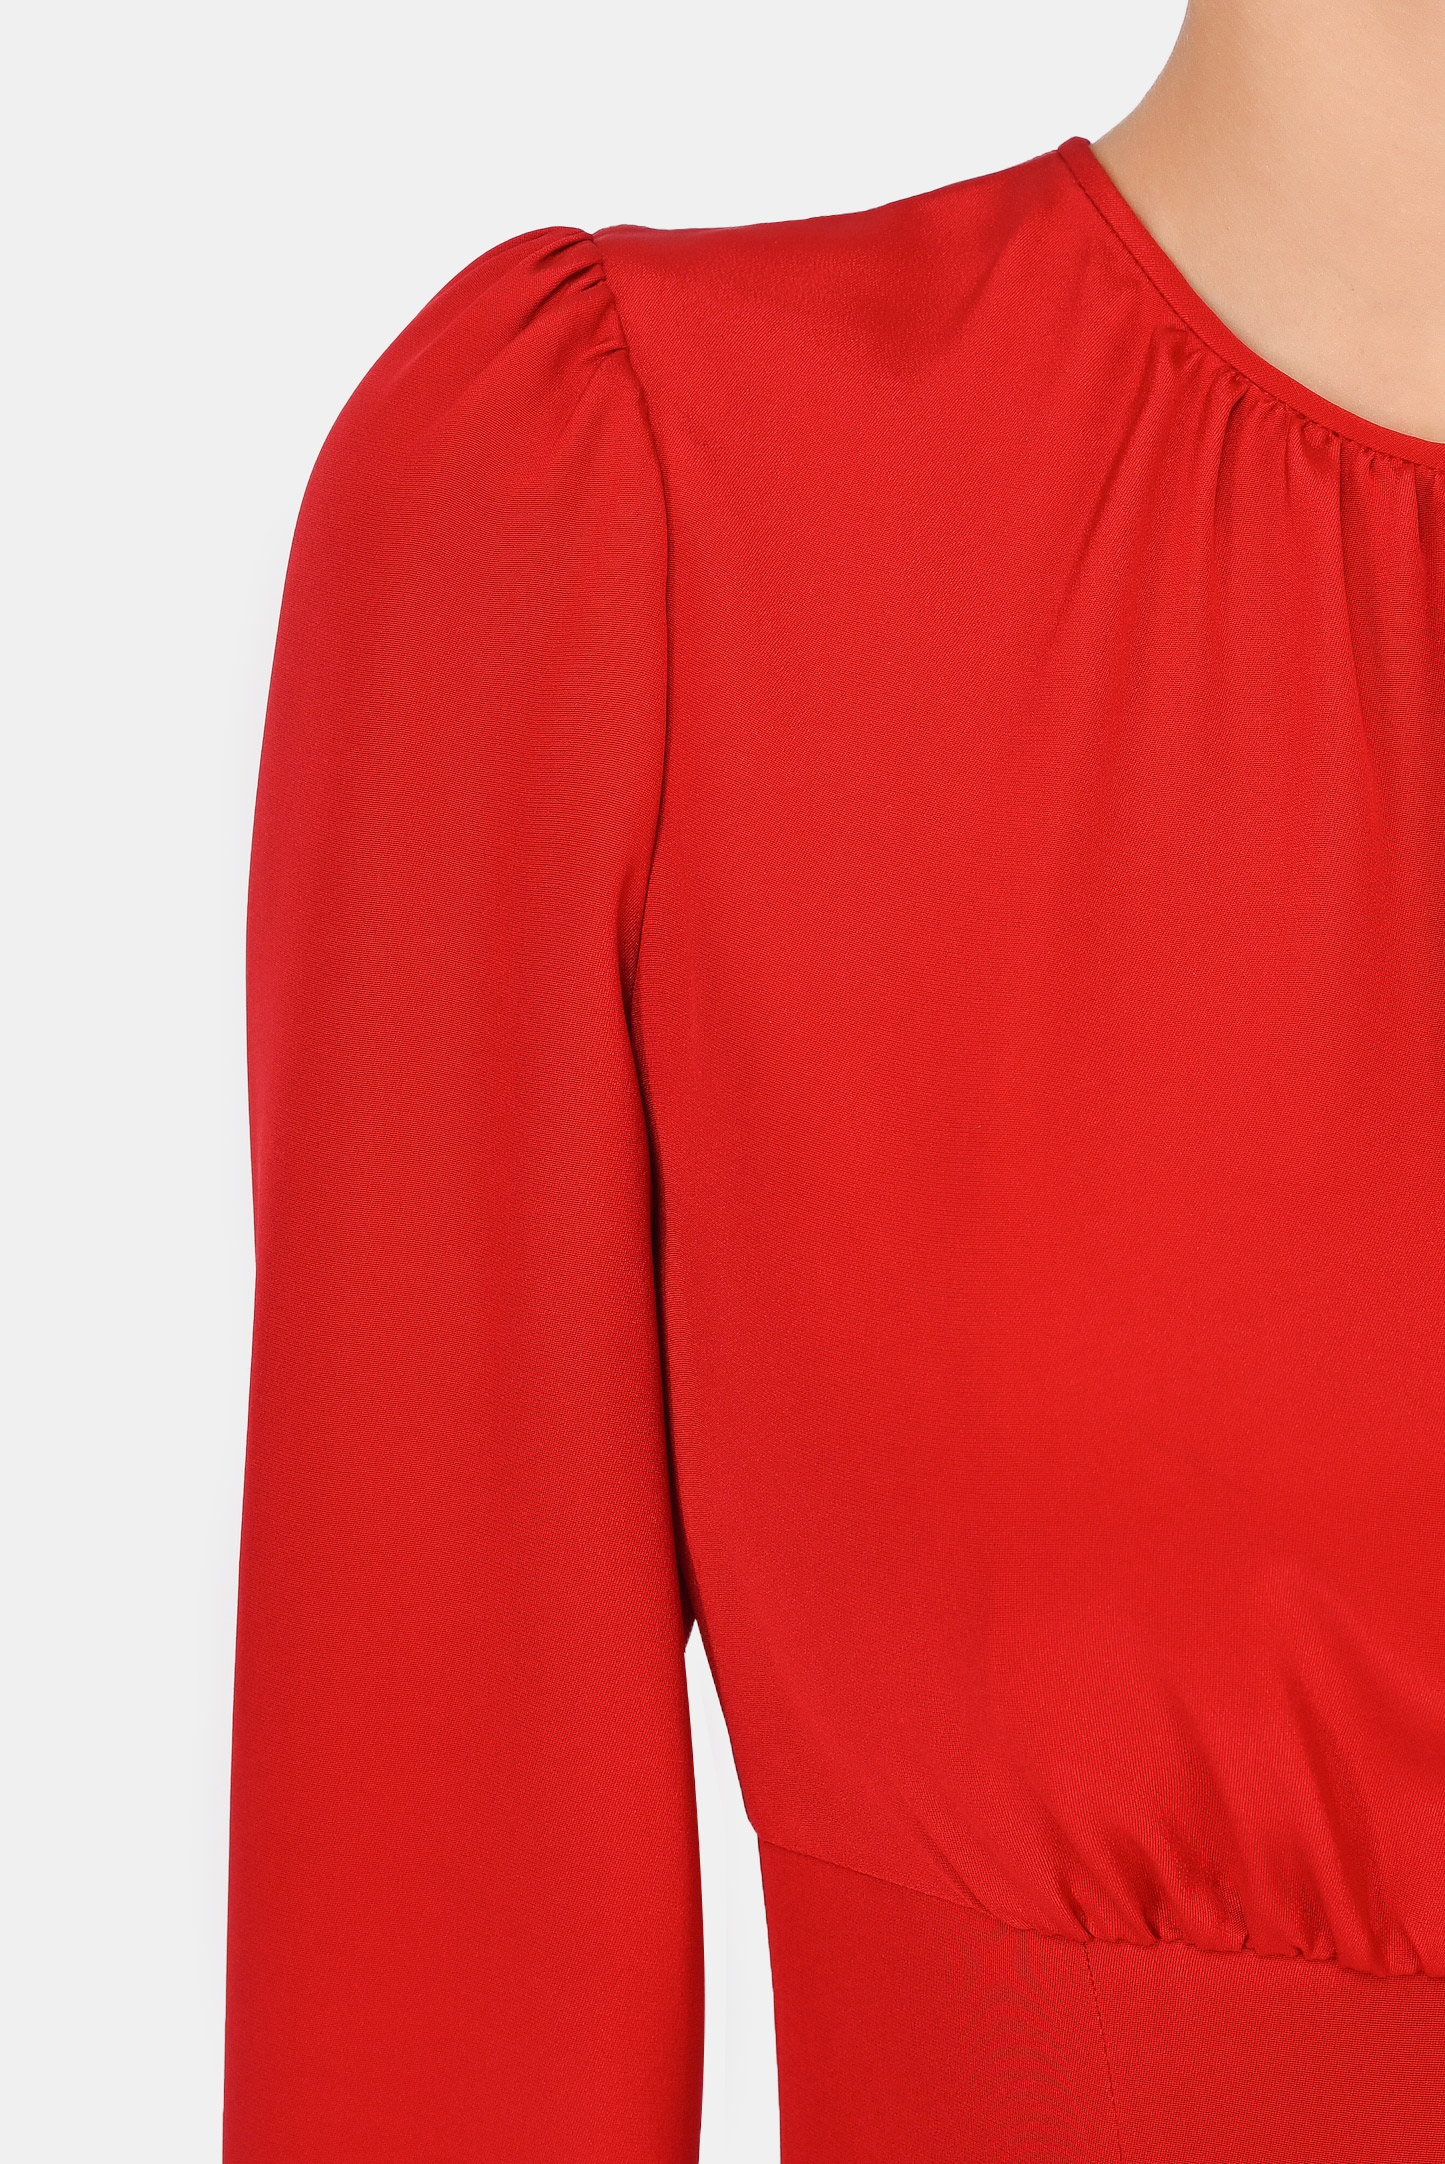 Платье DOLCE & GABBANA F6Q8ZT  FU1V2, цвет: Красный, Женский